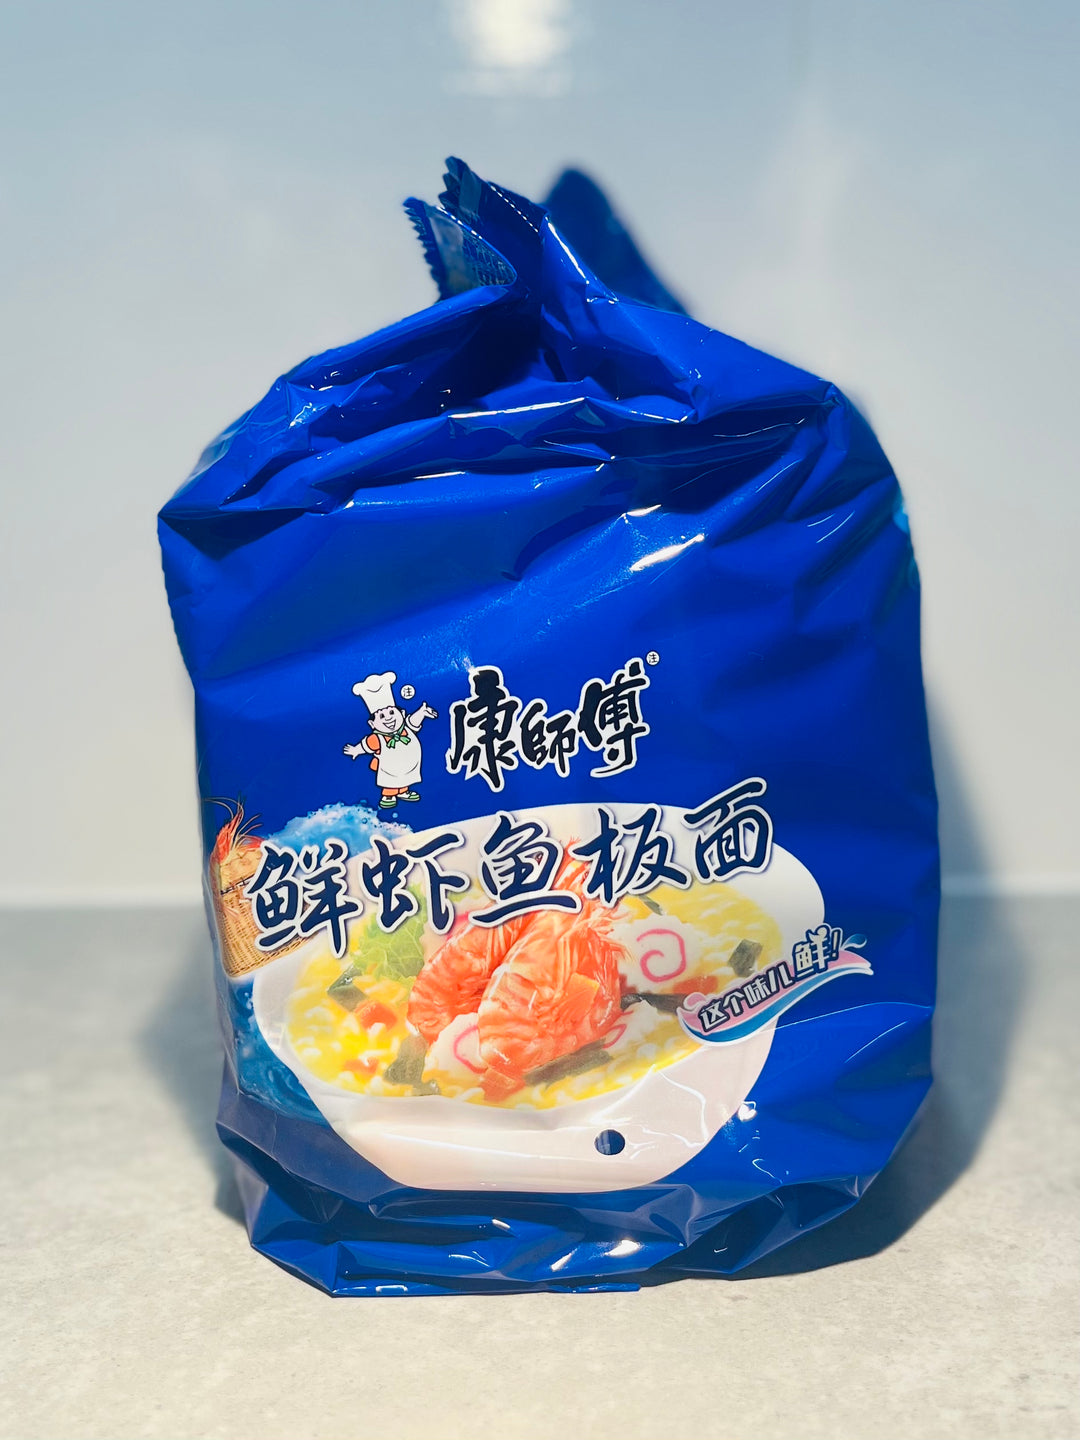 康师傅鲜虾鱼板面5pcks MK Fish and Shrimp Instant Noodle